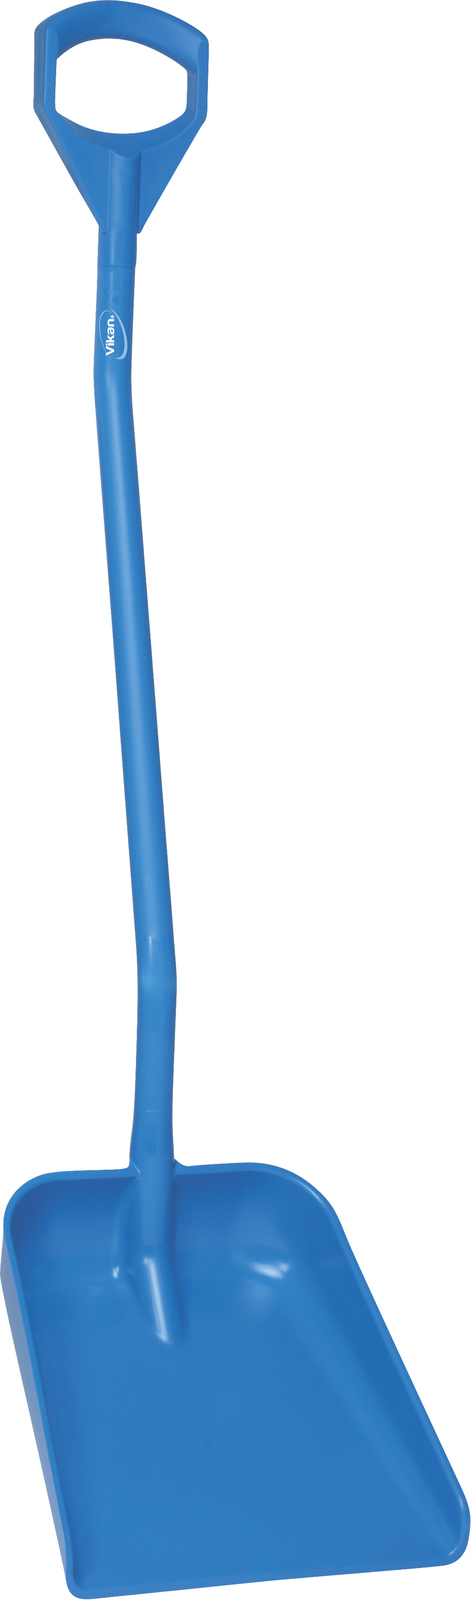 Vikan Shovel, Ergonomic 1310mm Handle